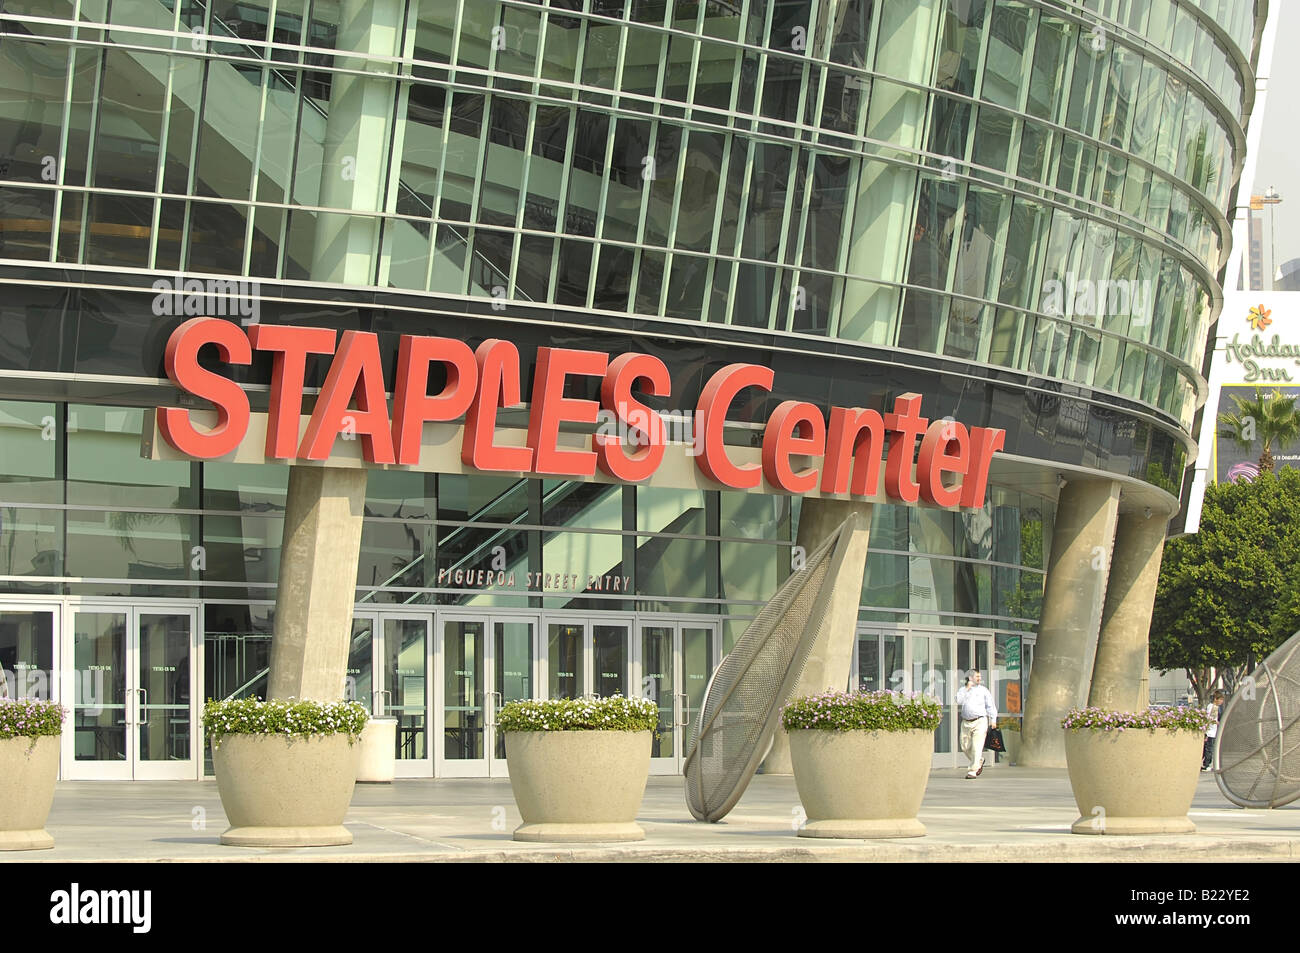 El Staples Center de Los Angeles, California, EE.UU. Foto de stock